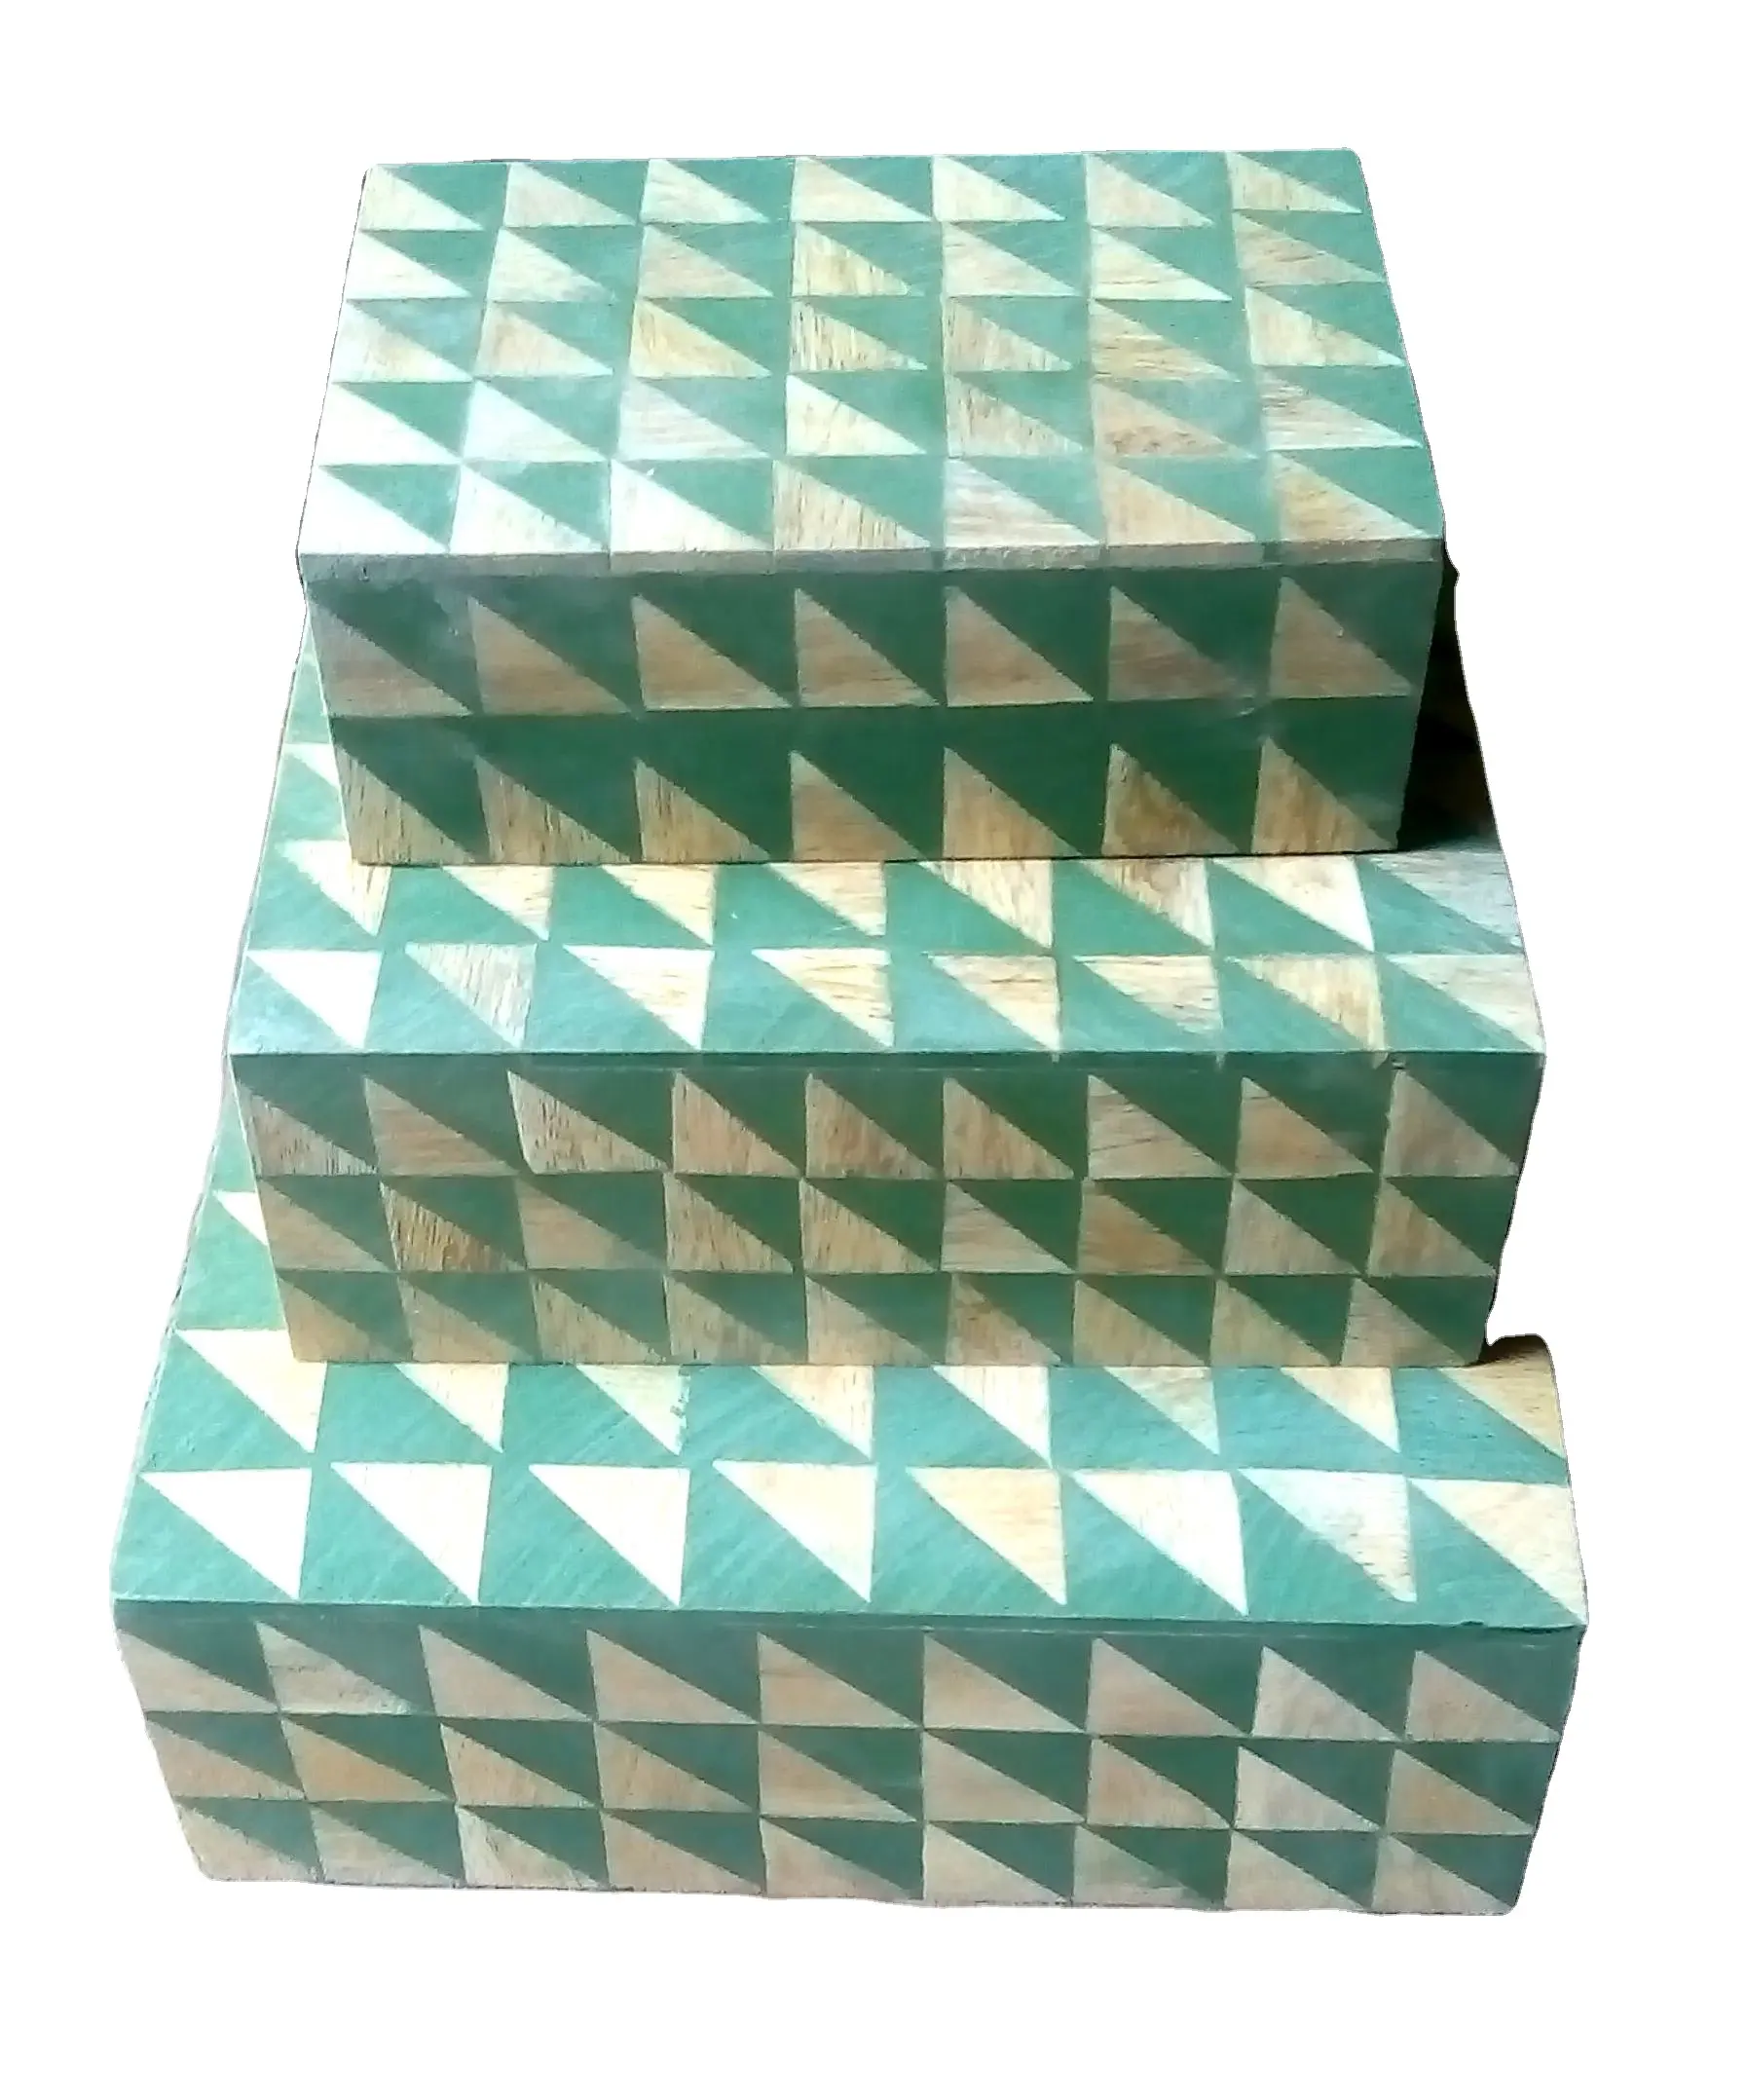 100% деревянная коробка с принтом ручной работы, уникальный дизайн, деревянная коробка, высокая закупочная коробка, Лидер продаж, продукт с трендовым качеством